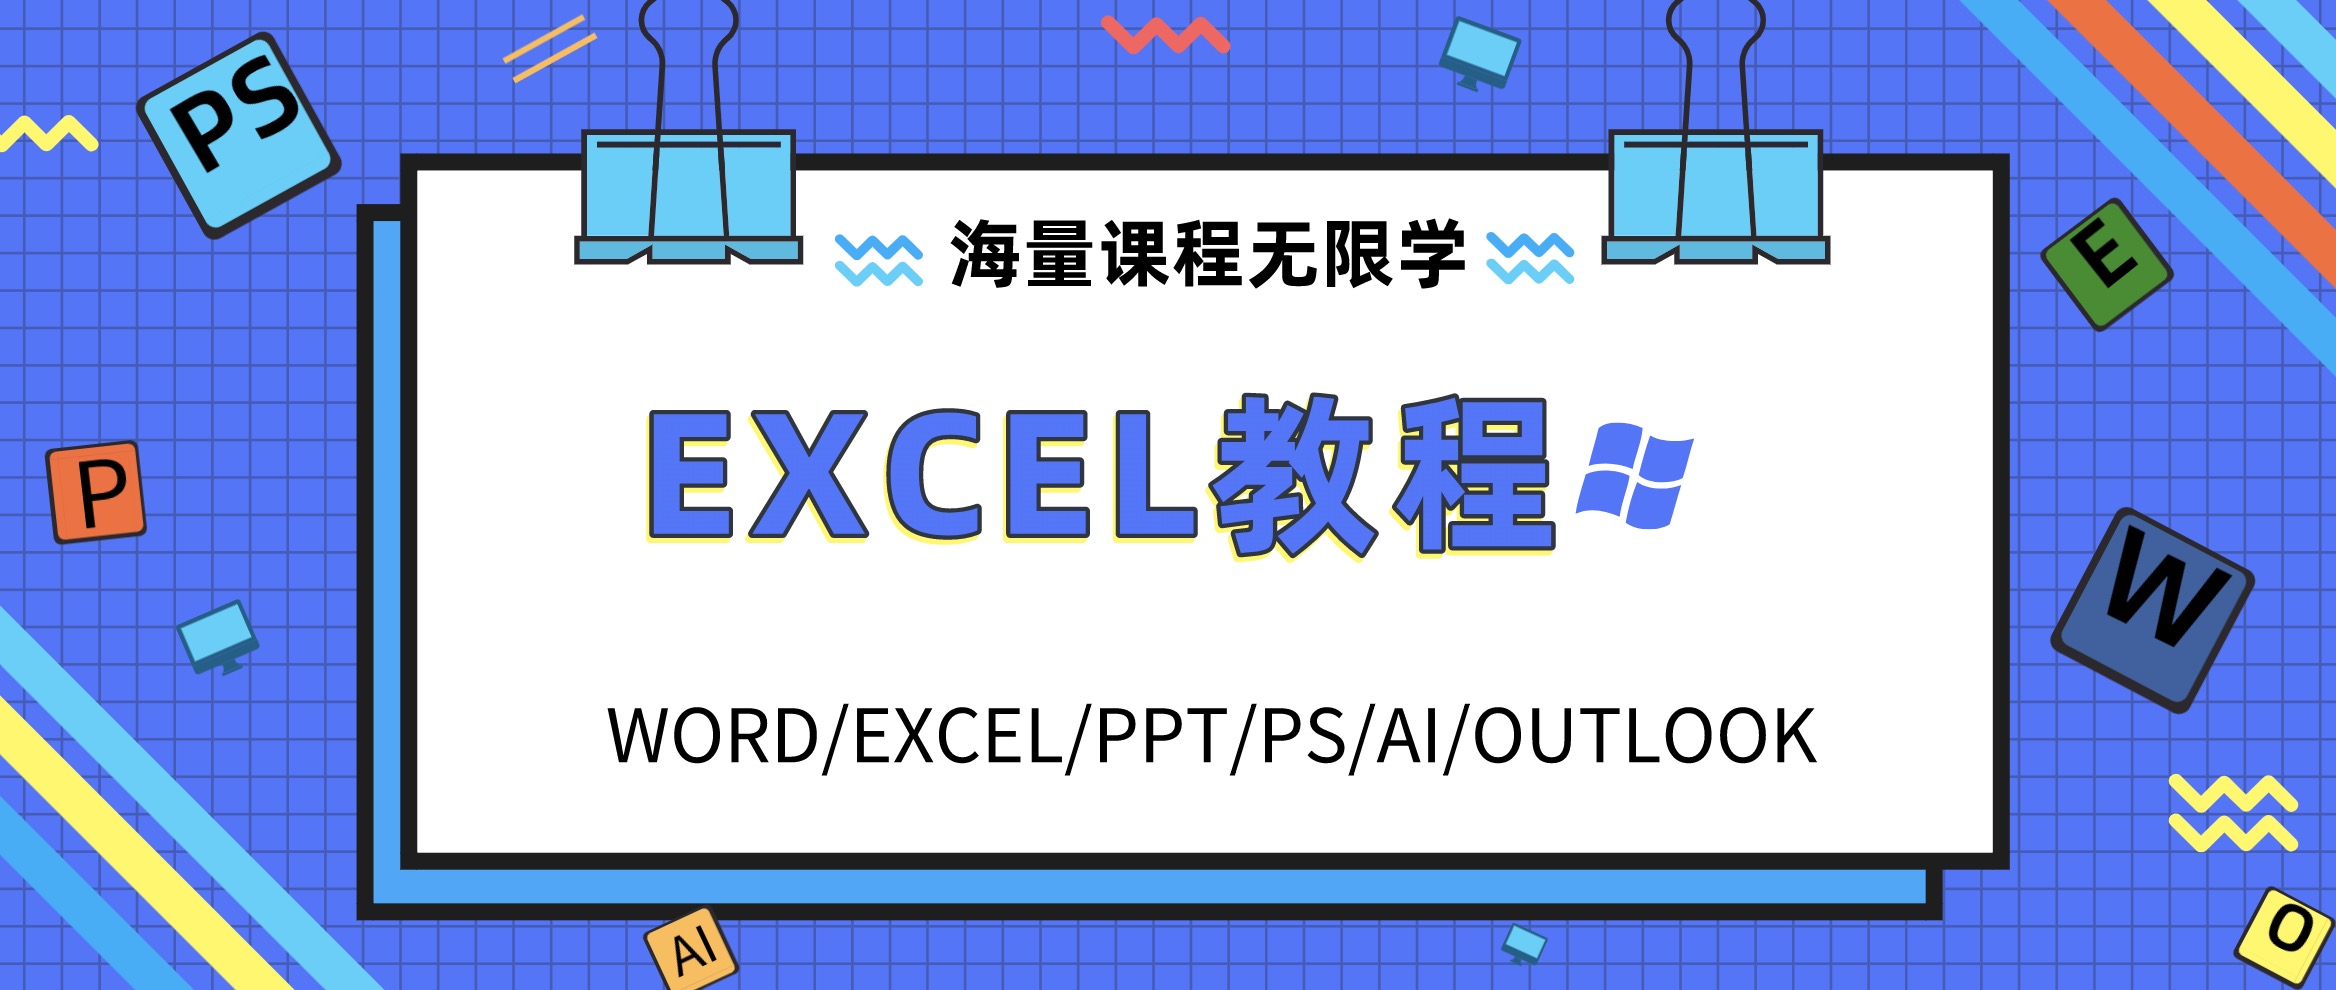 Excel学习教程资料合集包 百度网盘